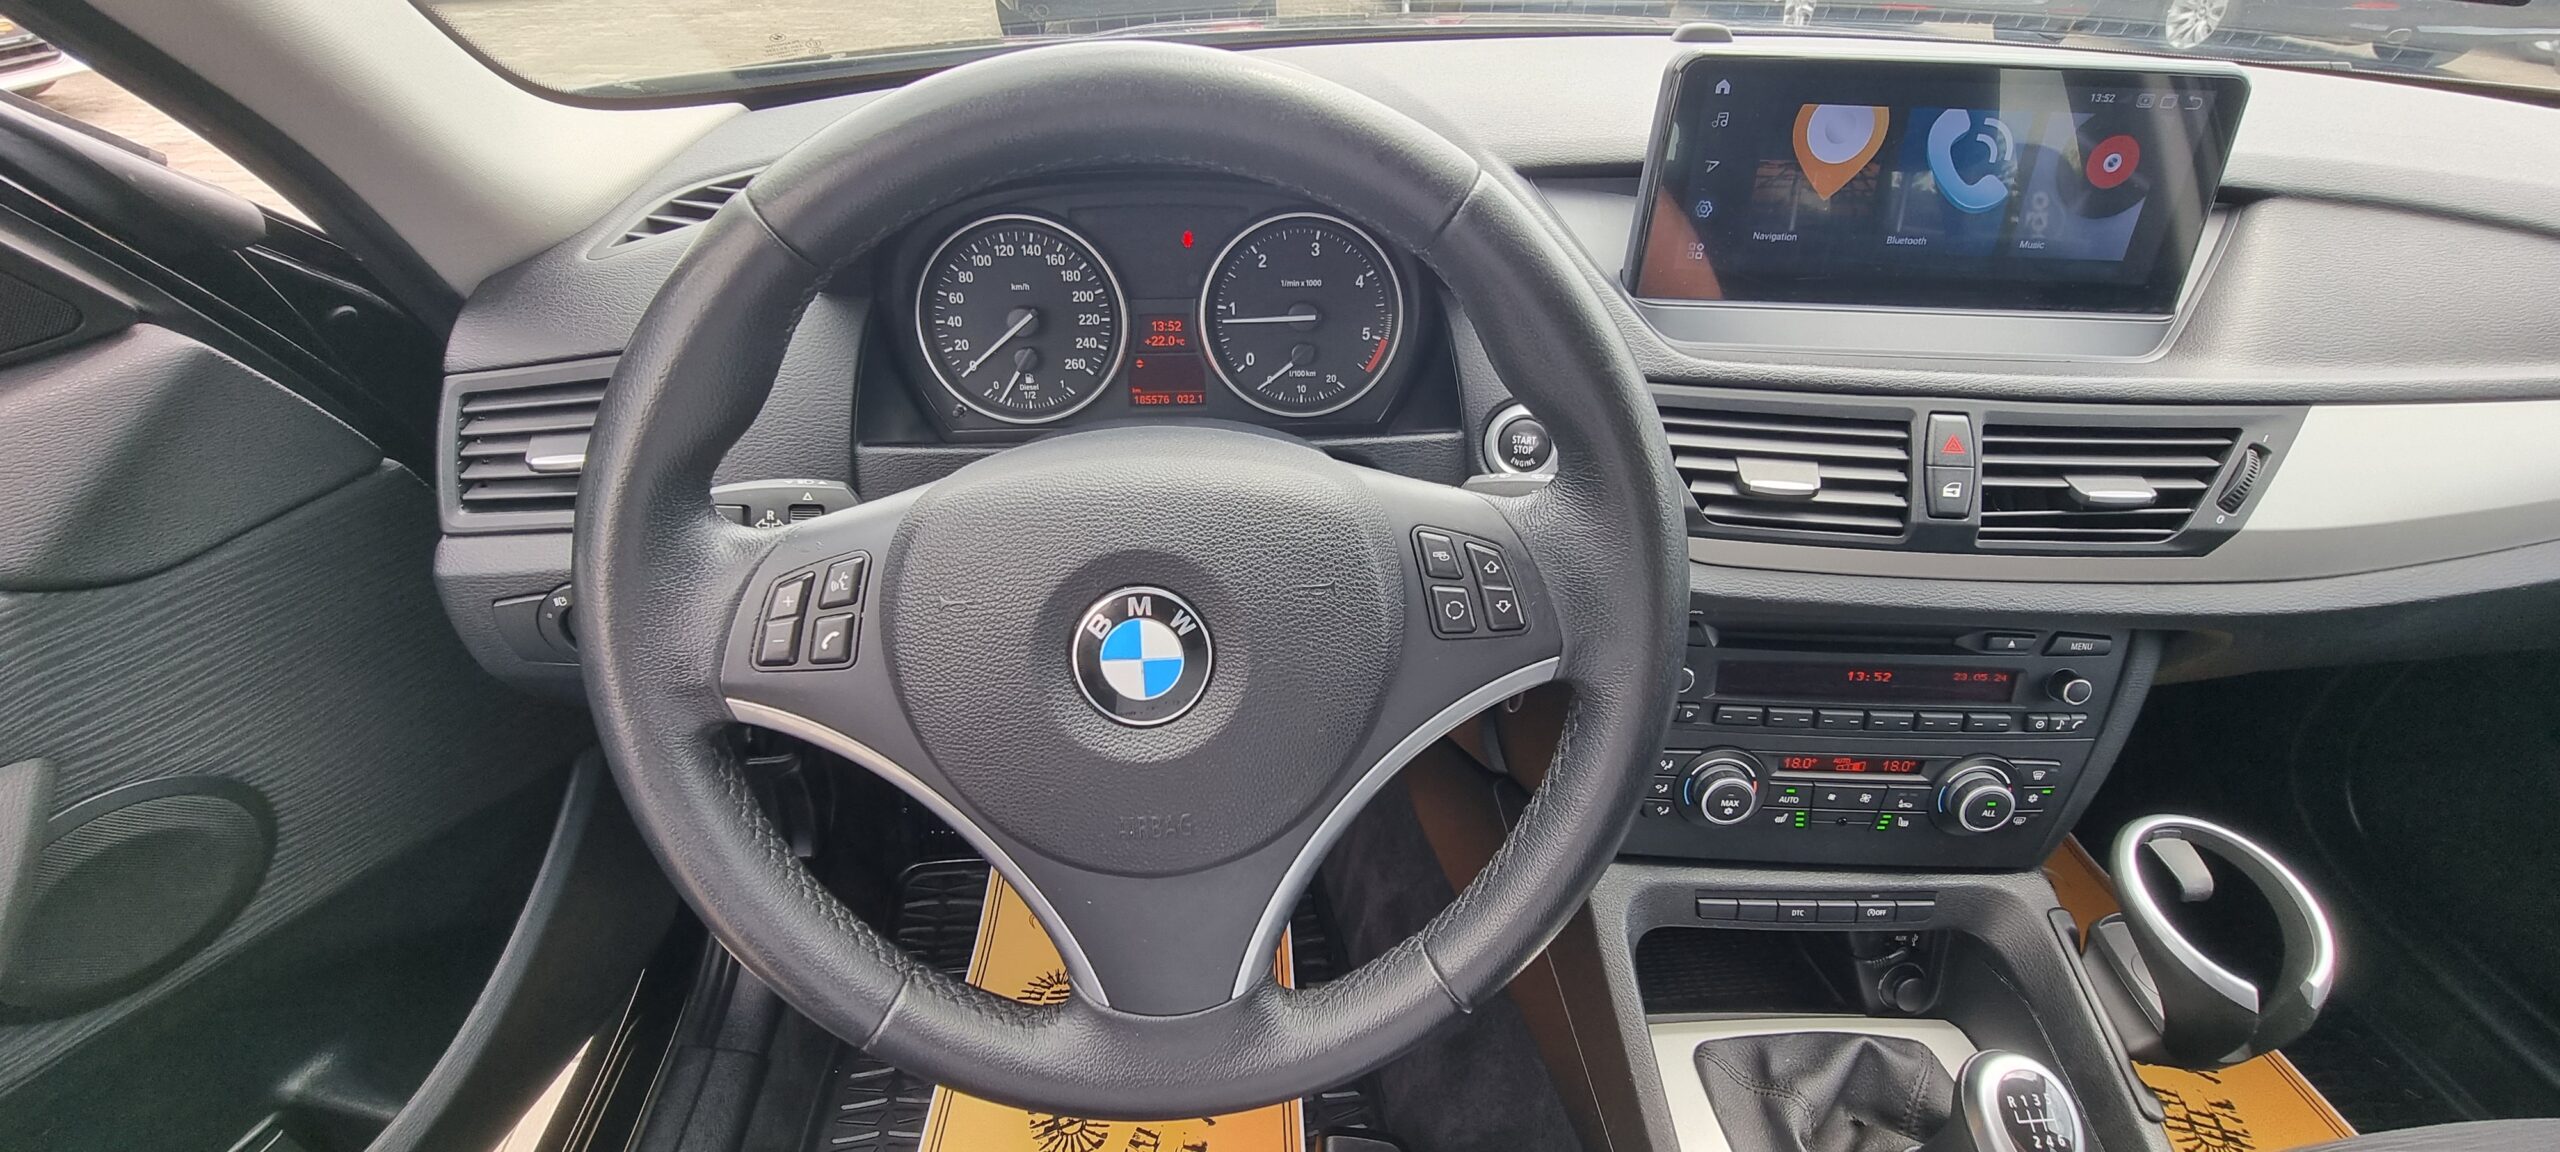 BMW X1 , 2.0 DIESEL, 143 CP, EURO 5, AN 2010